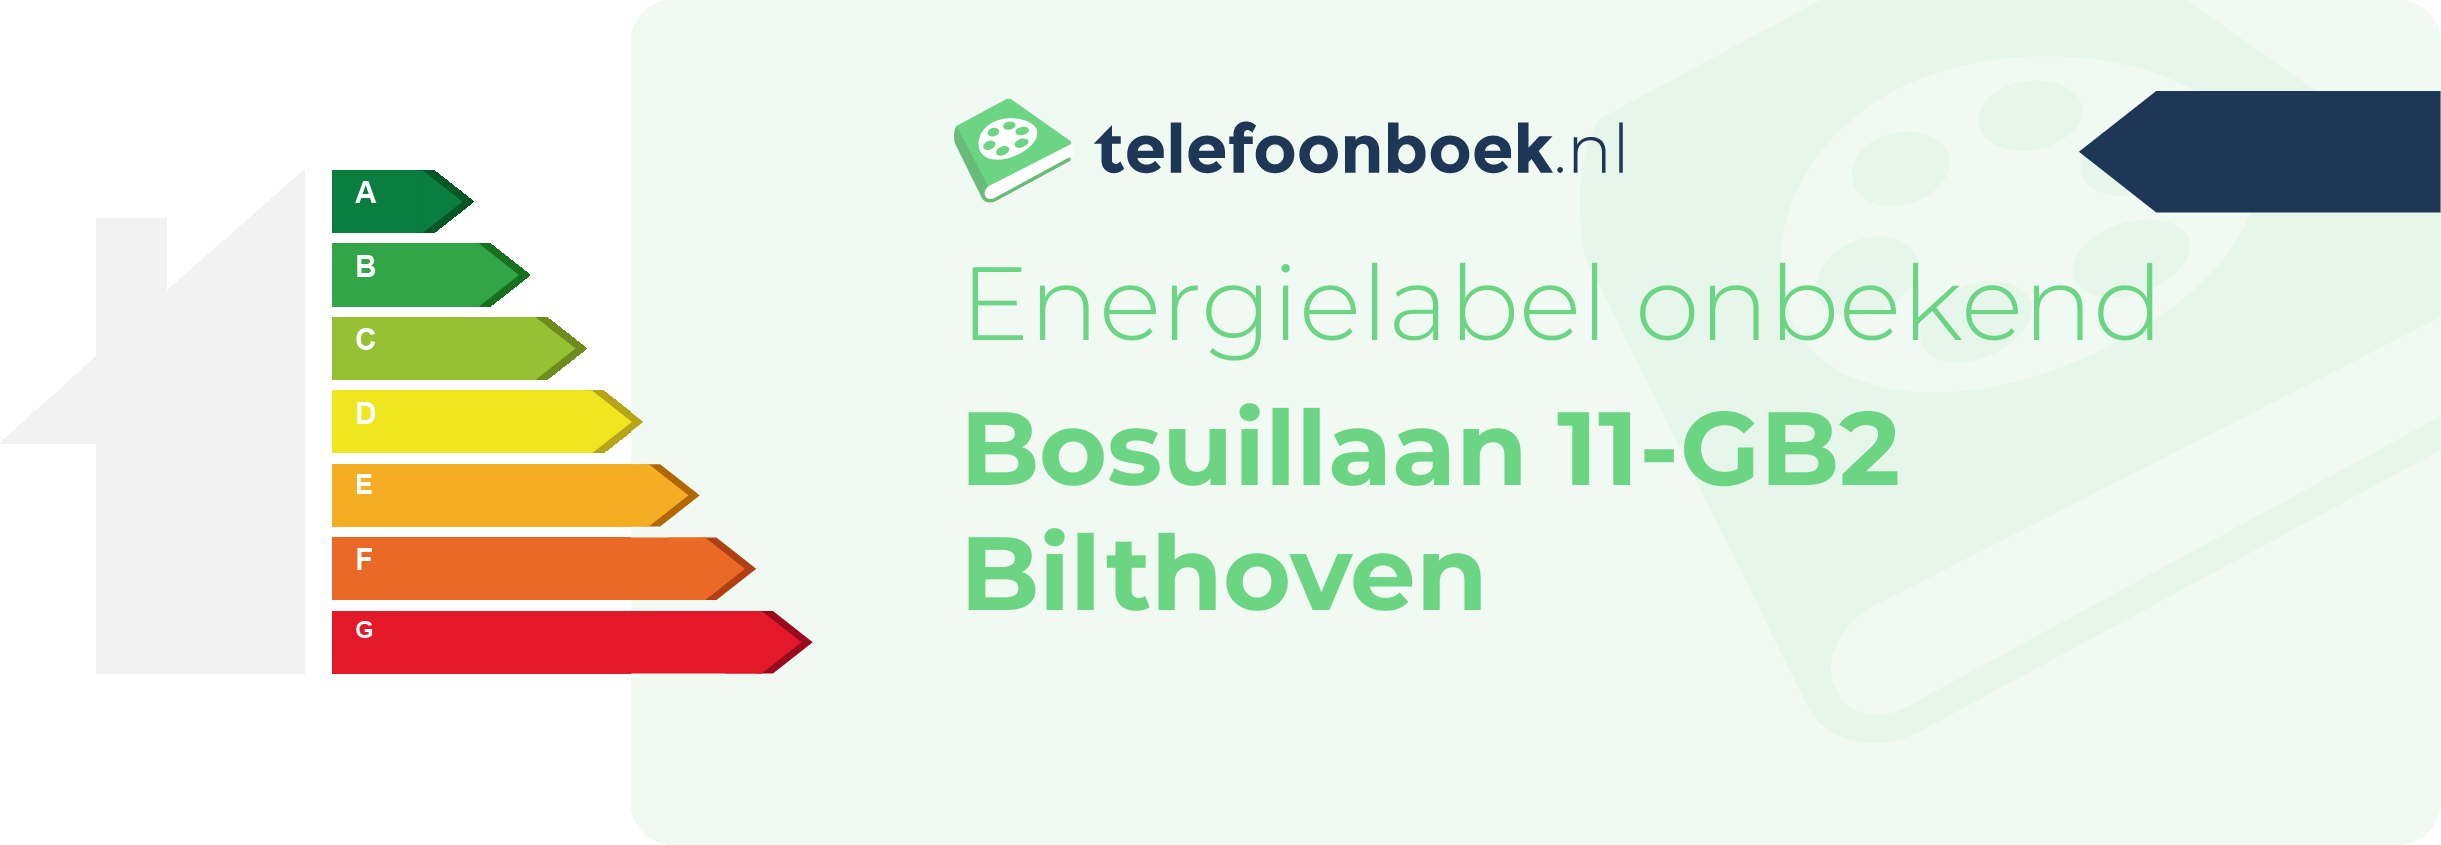 Energielabel Bosuillaan 11-GB2 Bilthoven